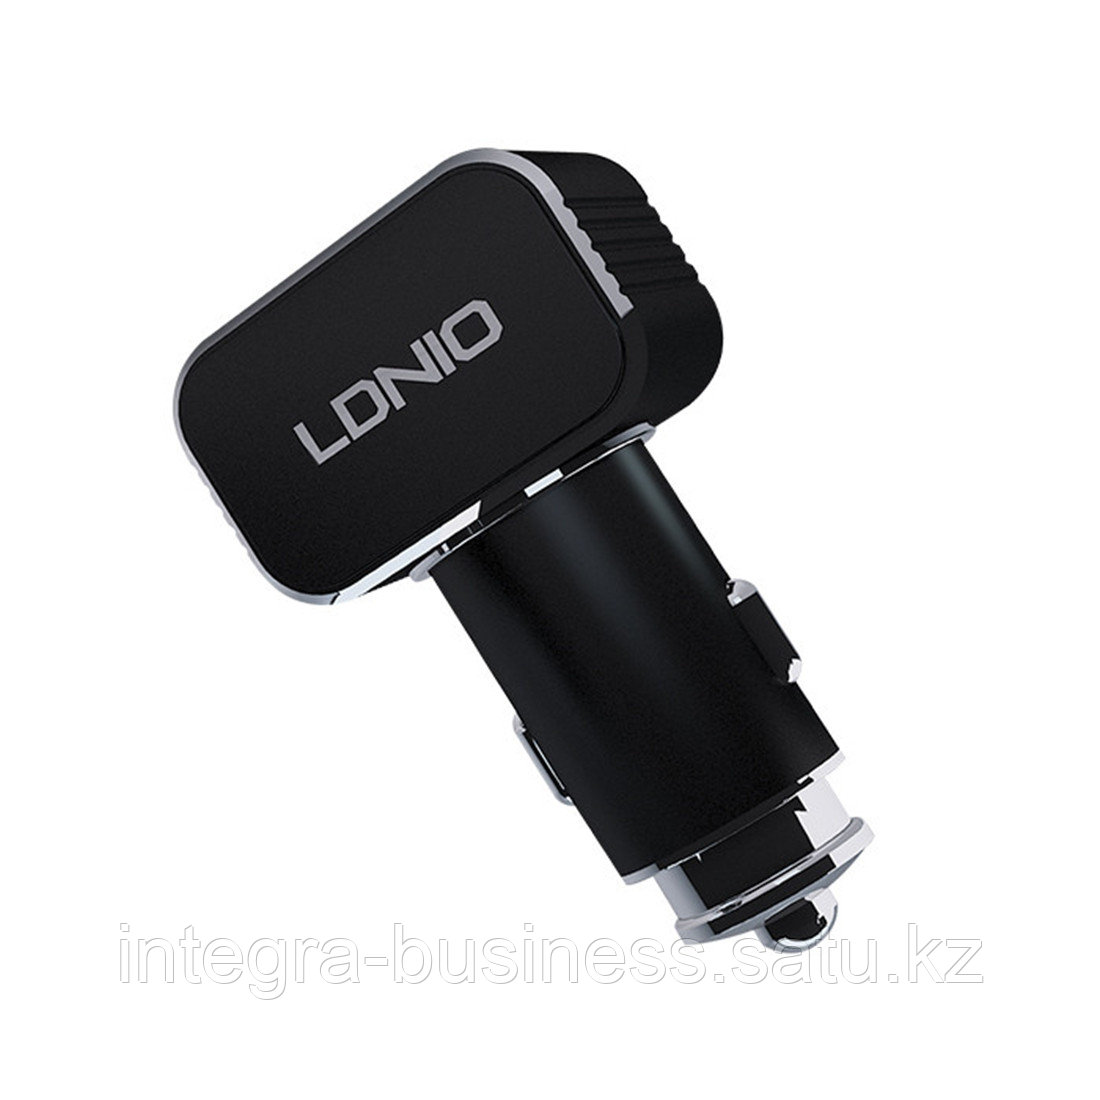 Автомобильное зарядное устройство LDNIO C306 2*USB-A 18W 5V-3.6A Auto Lightning Чёрный, фото 1